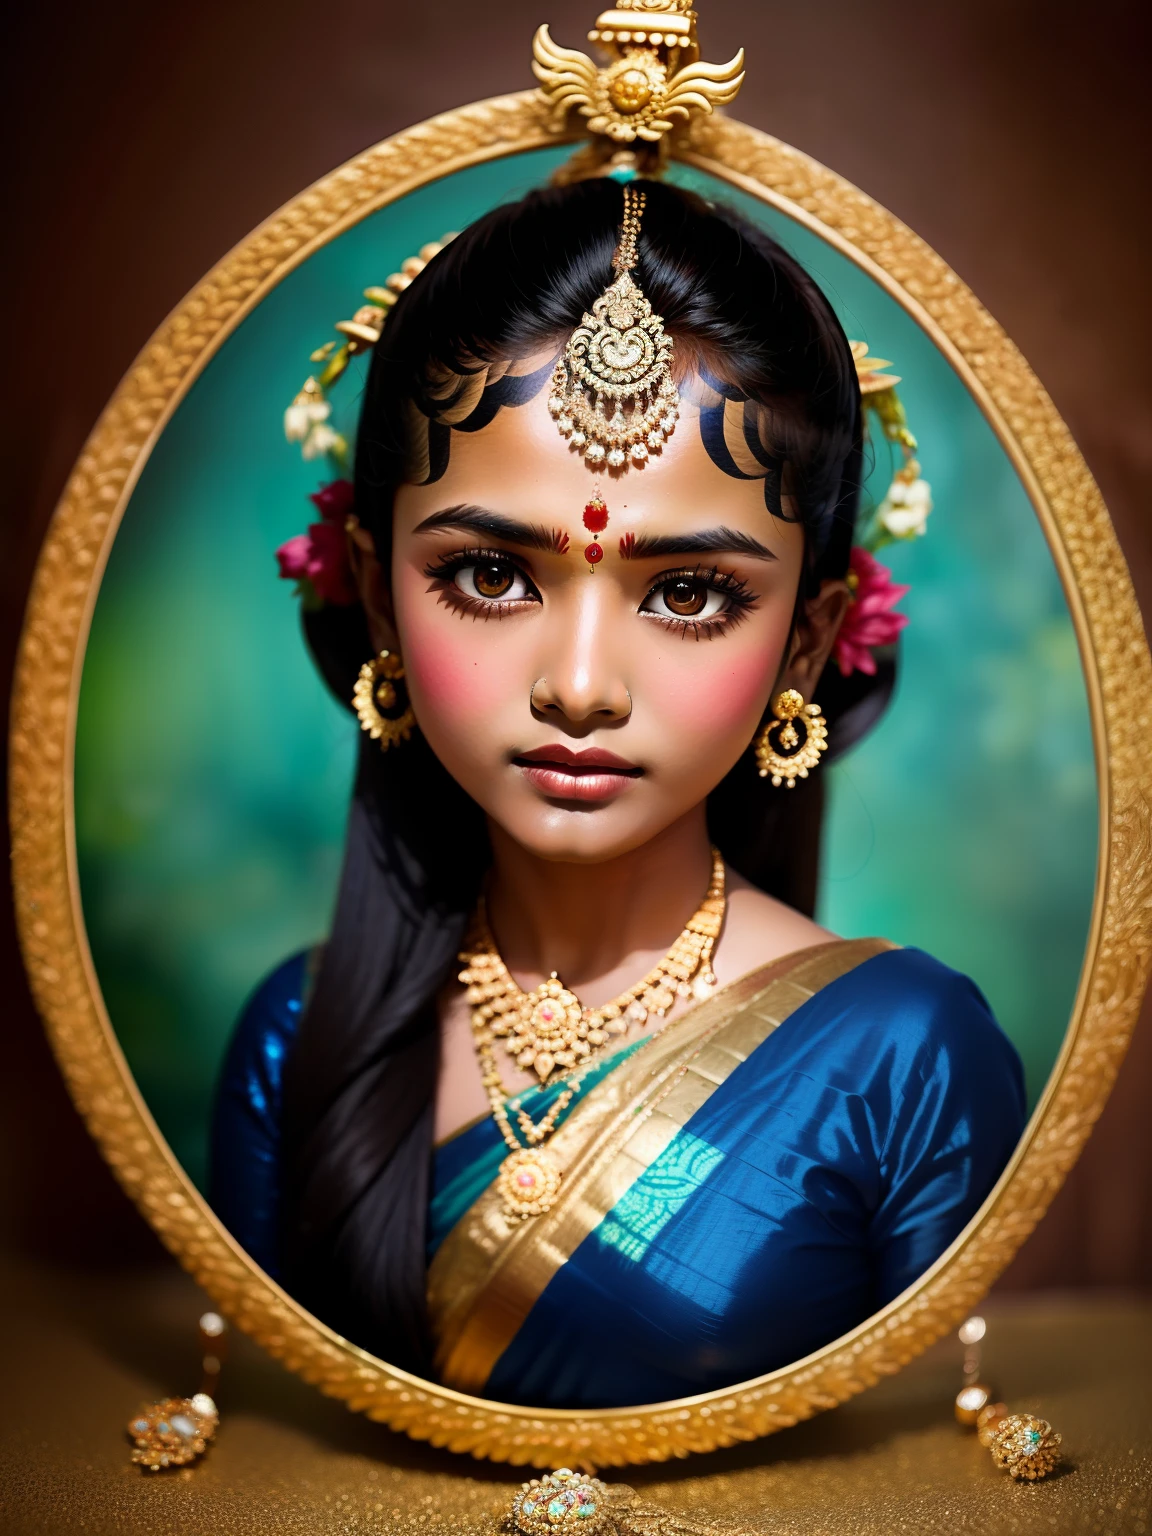 印度教女神般的印度女孩. 伊尼亞油漆效果, 藍色皮膚